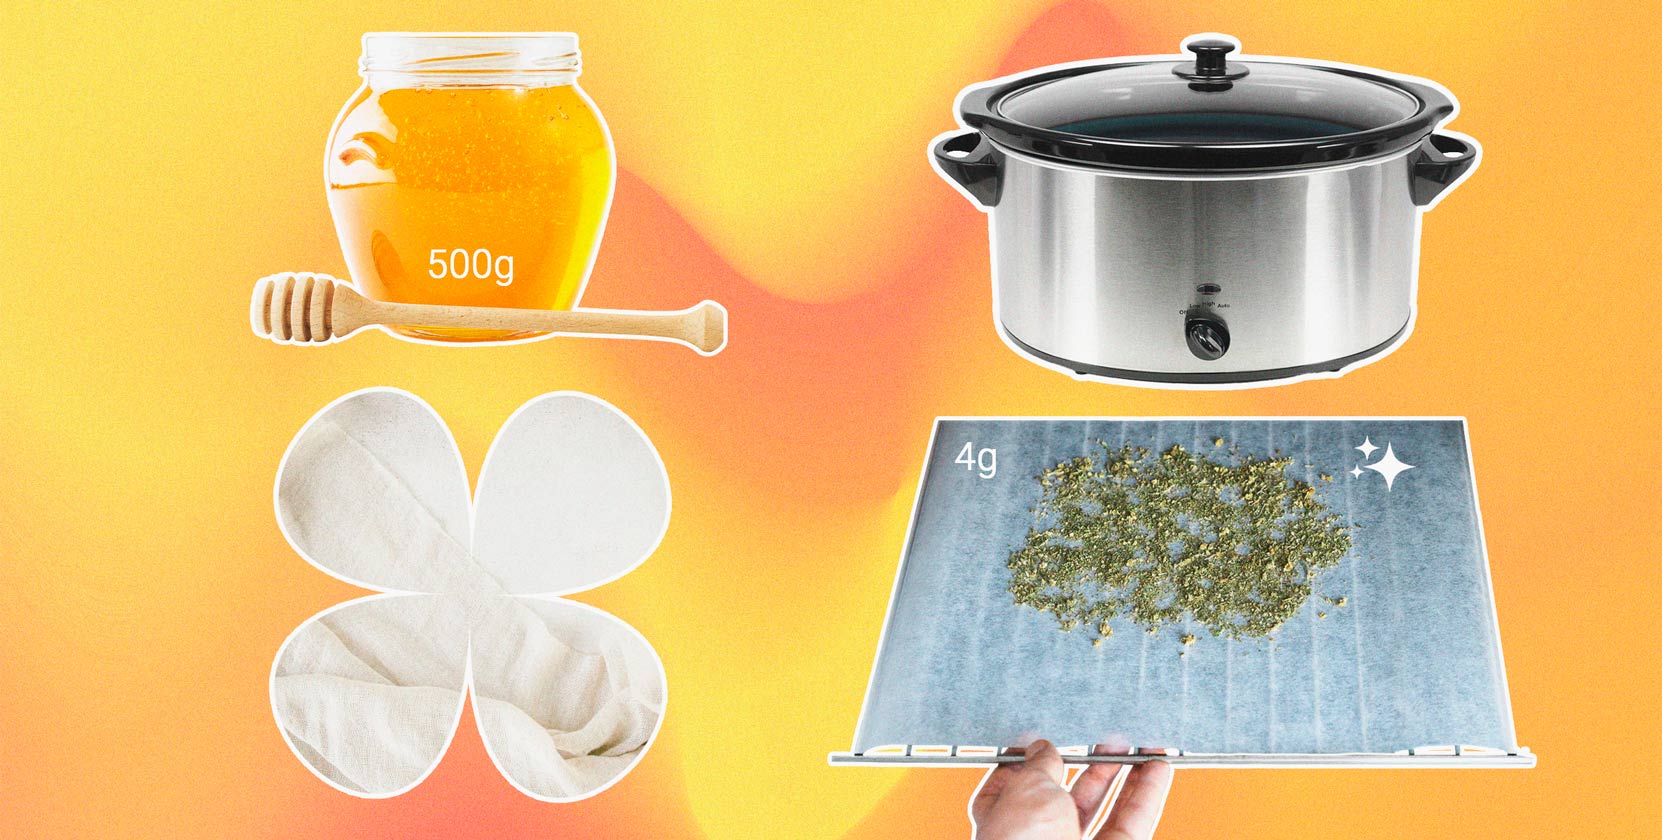 Come fare in casa il miele alla tintura di cannabis